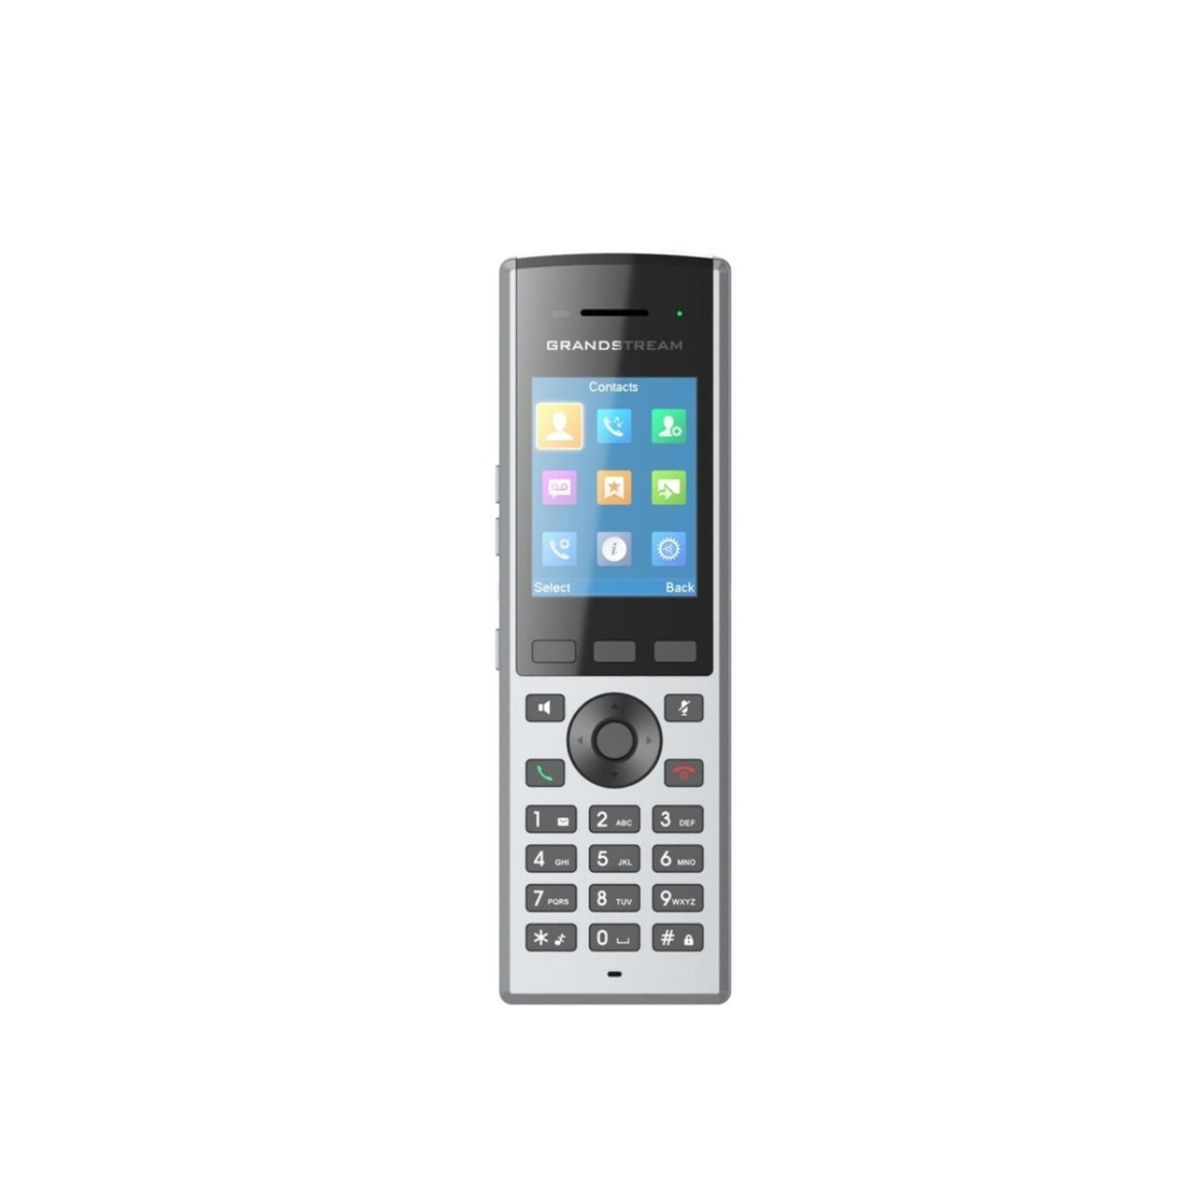 Điện thoại cầm tay không dây dectphone Grandstream DP730 màn hình 2.4 inch, pin 1500 mAh, báo rung và chuông